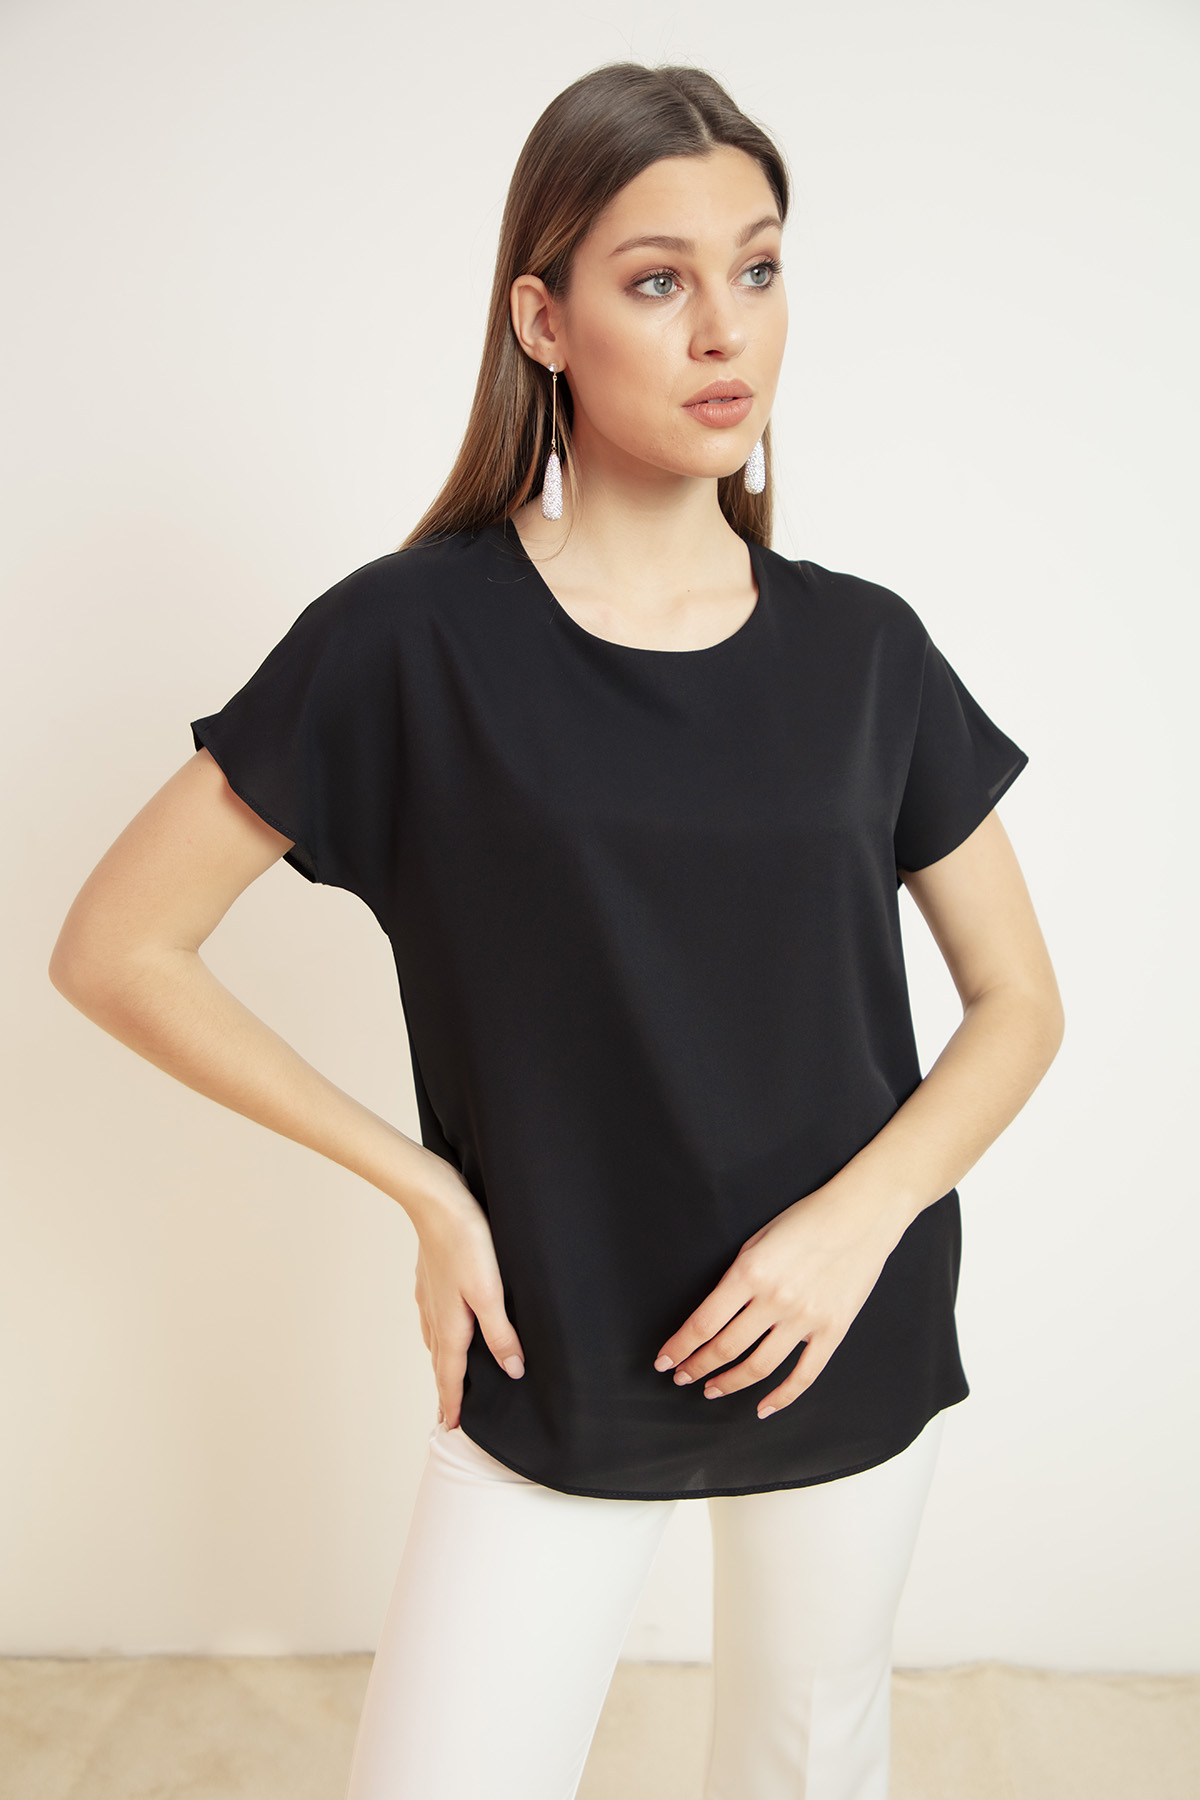 Women's Black Short Sleeve Blouse